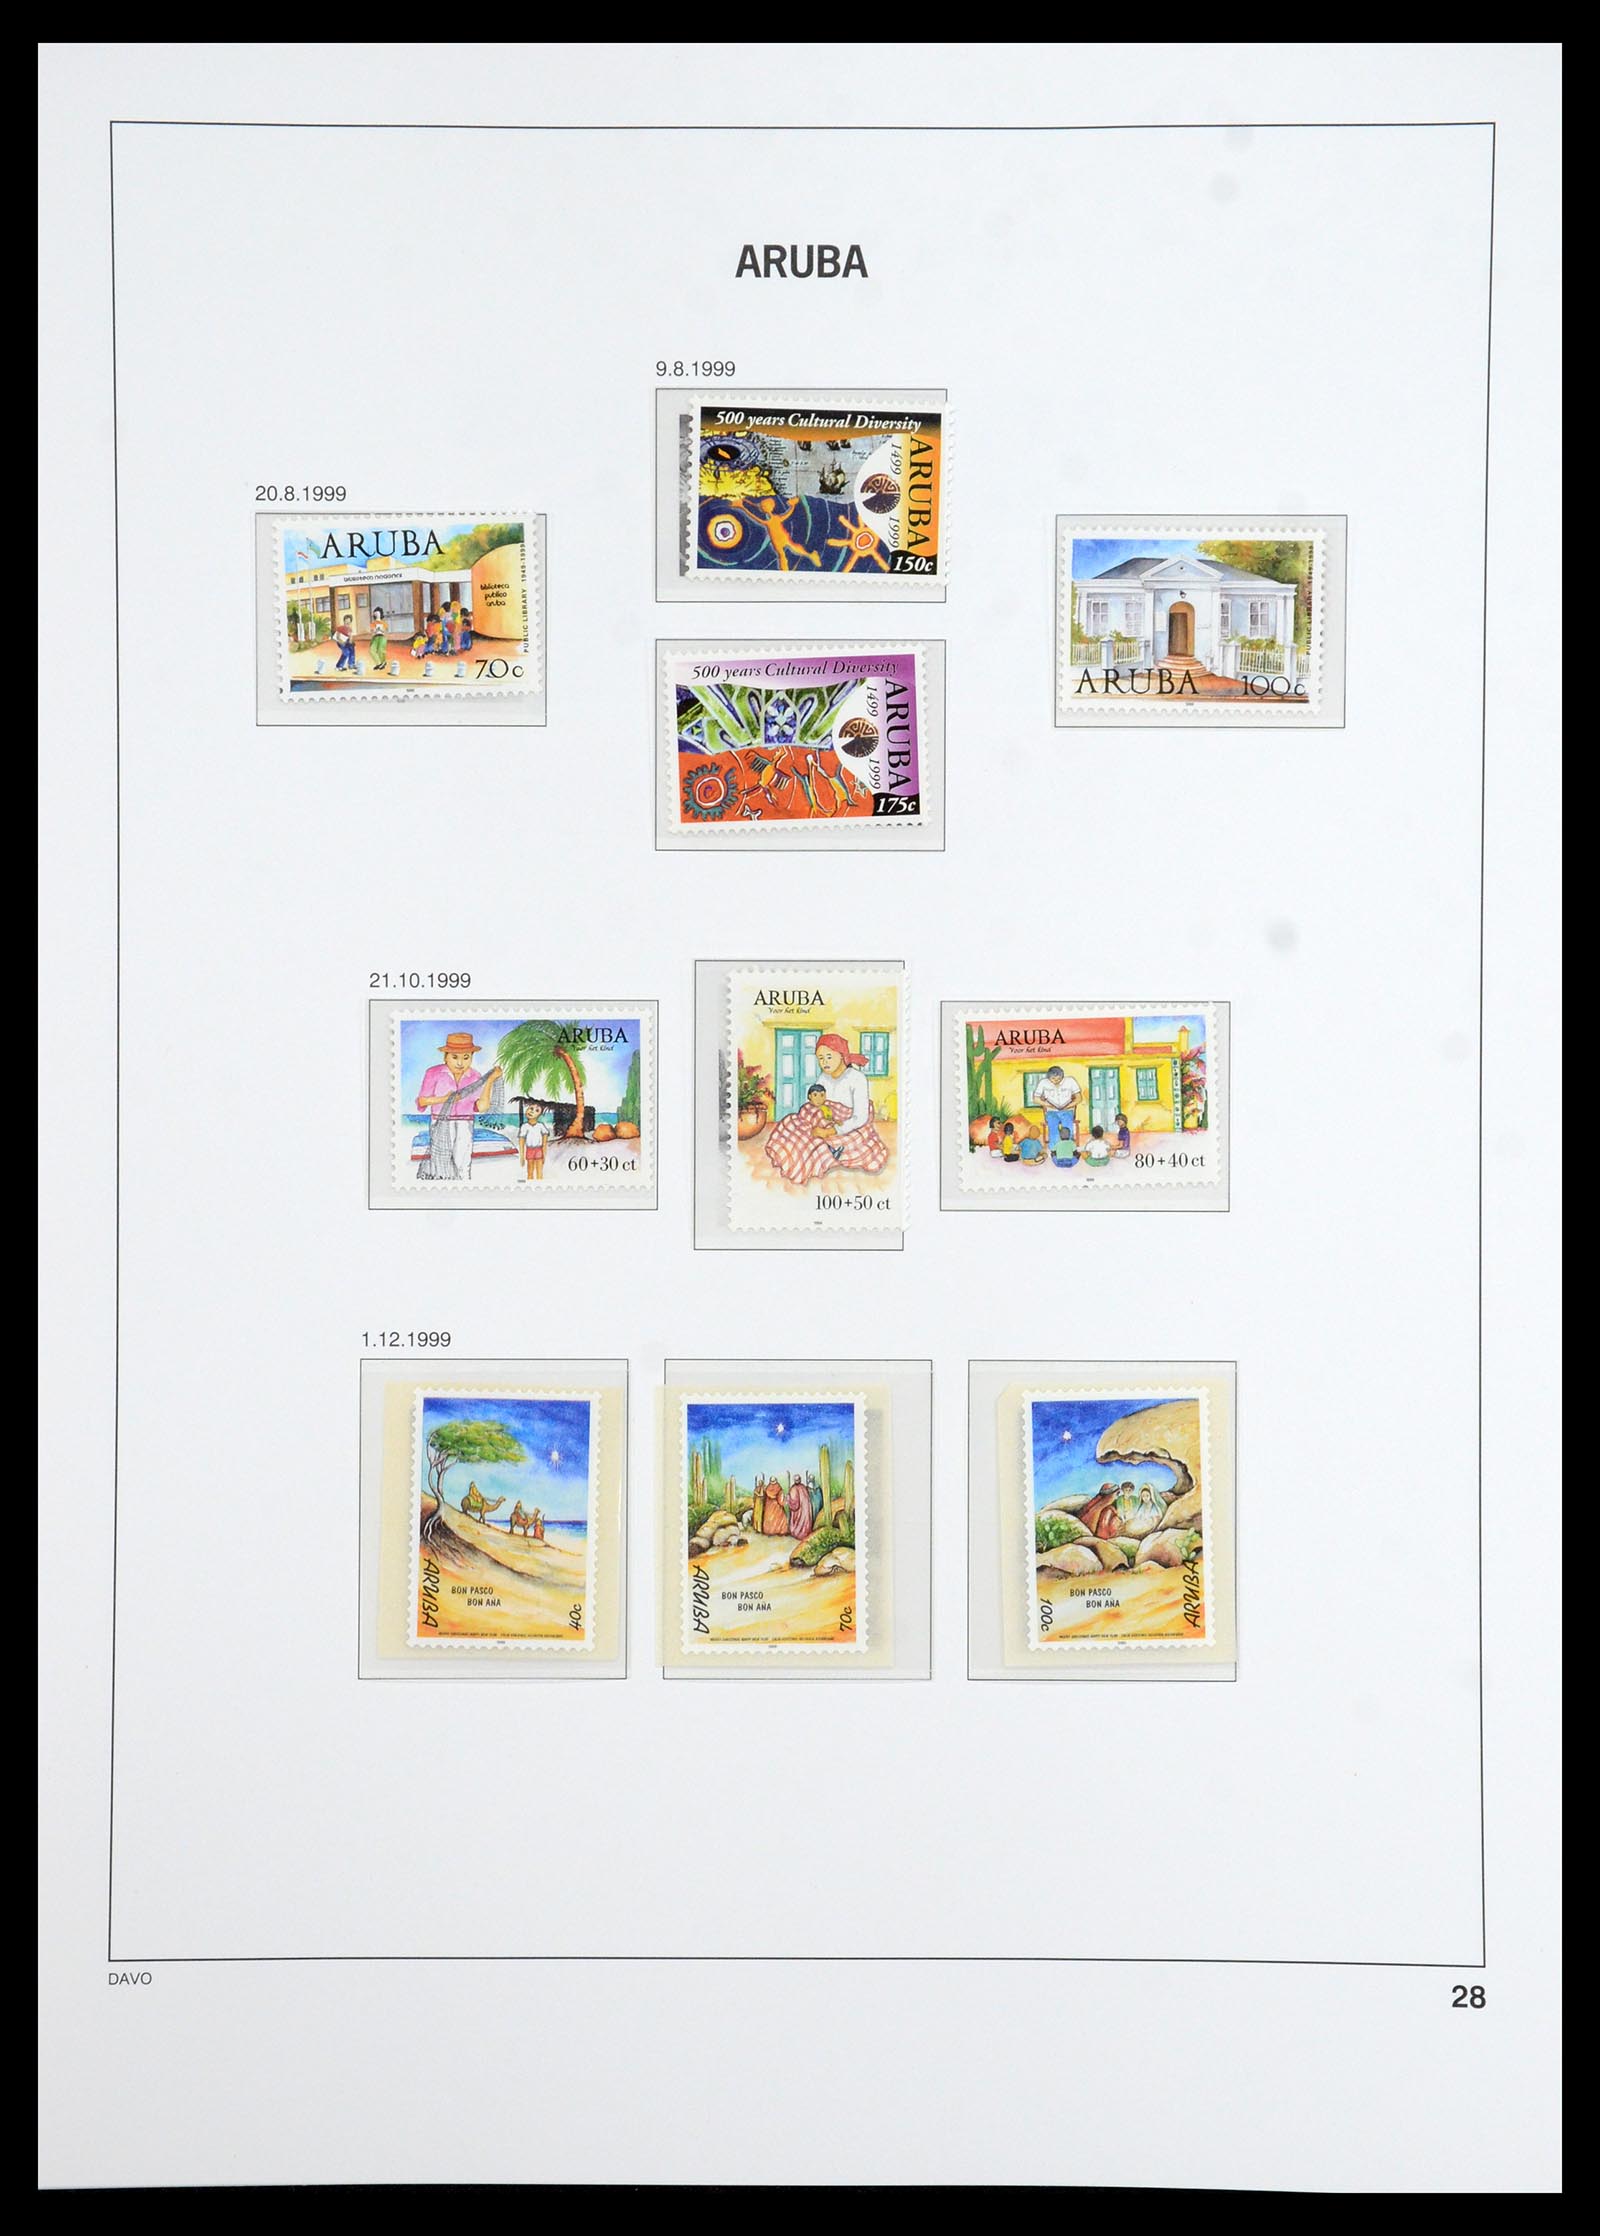 36369 029 - Stamp collection 36369 Aruba 1986-2009.